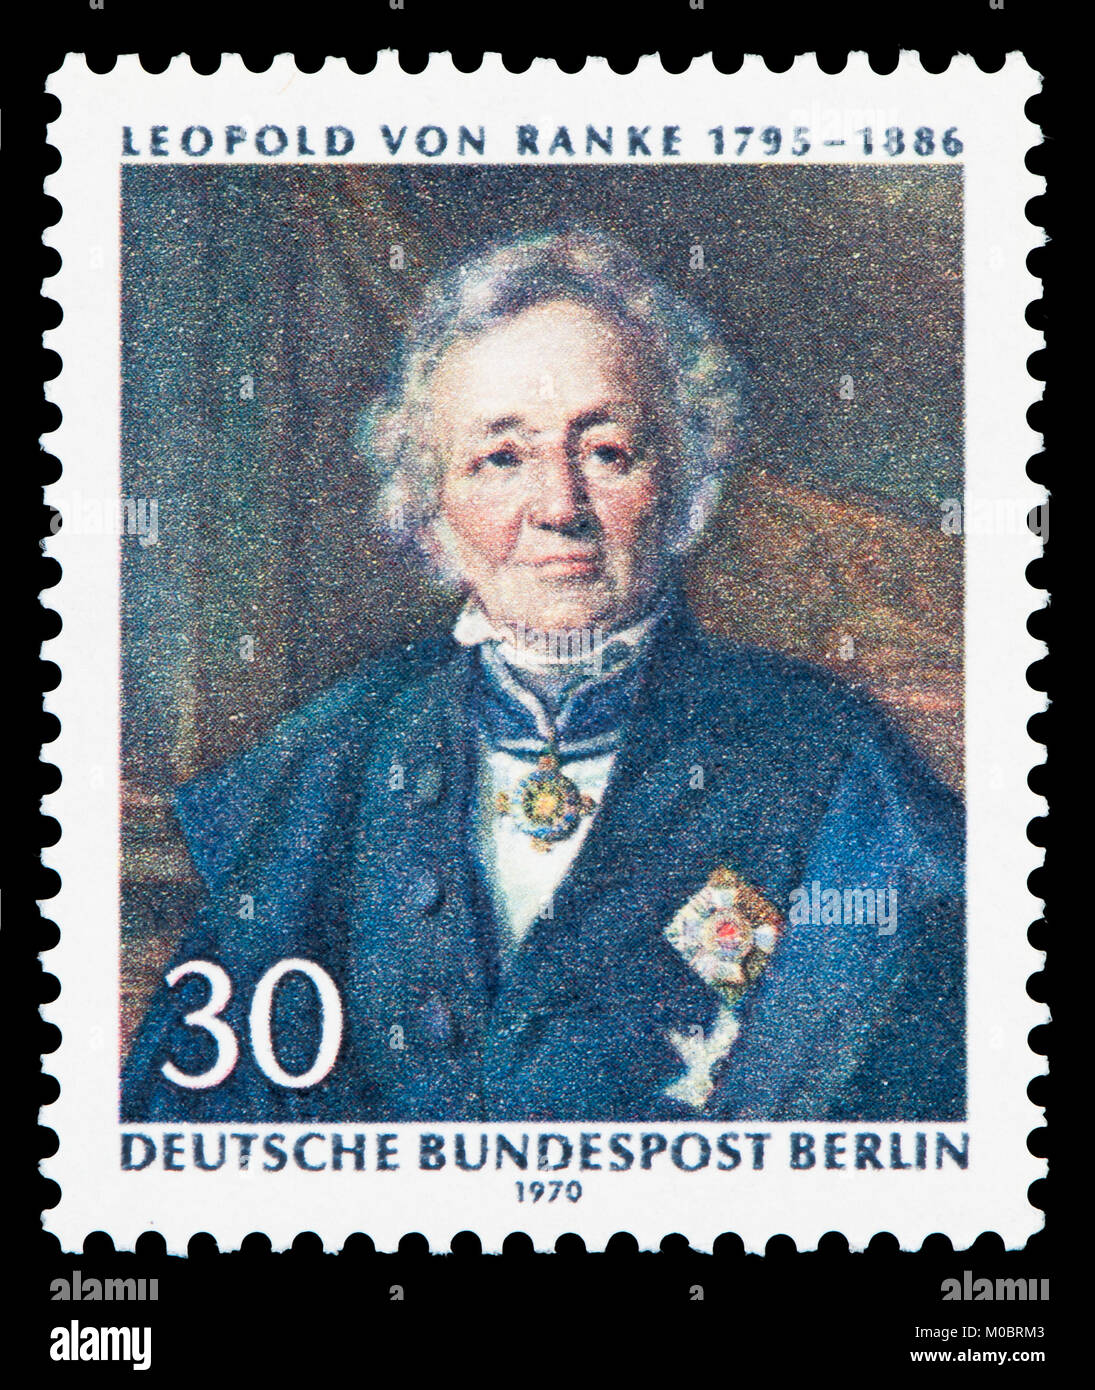 L'allemand (W) Berlin timbre-poste (1970) : Leopold von Ranke (1795 - 1886) historien allemand et d'un fondateur de l'histoire basée sur les sources modernes Banque D'Images